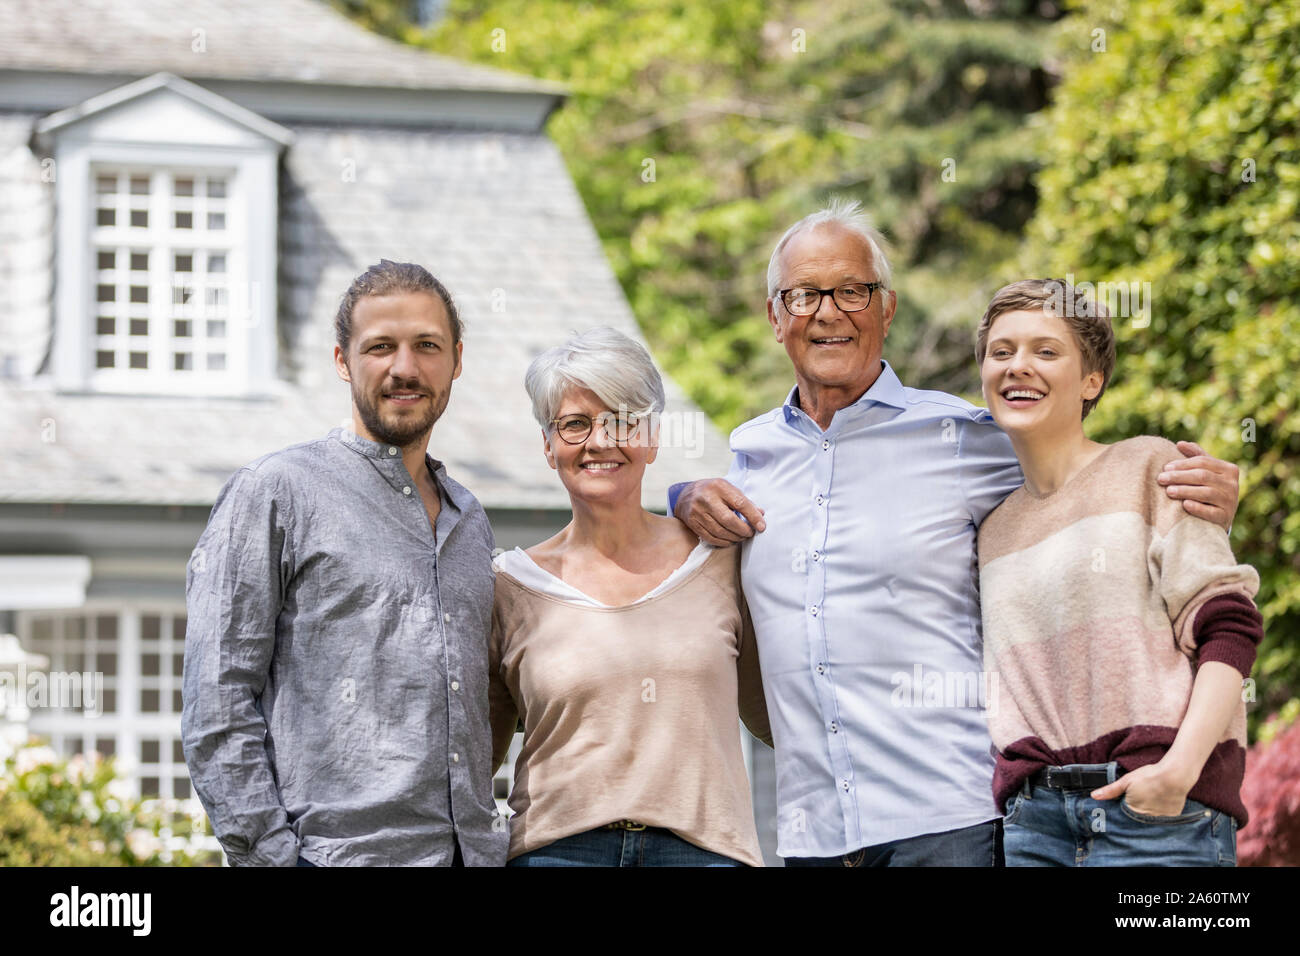 Happy senior couple avec enfants adultes debout dans leur maison de jardin Banque D'Images